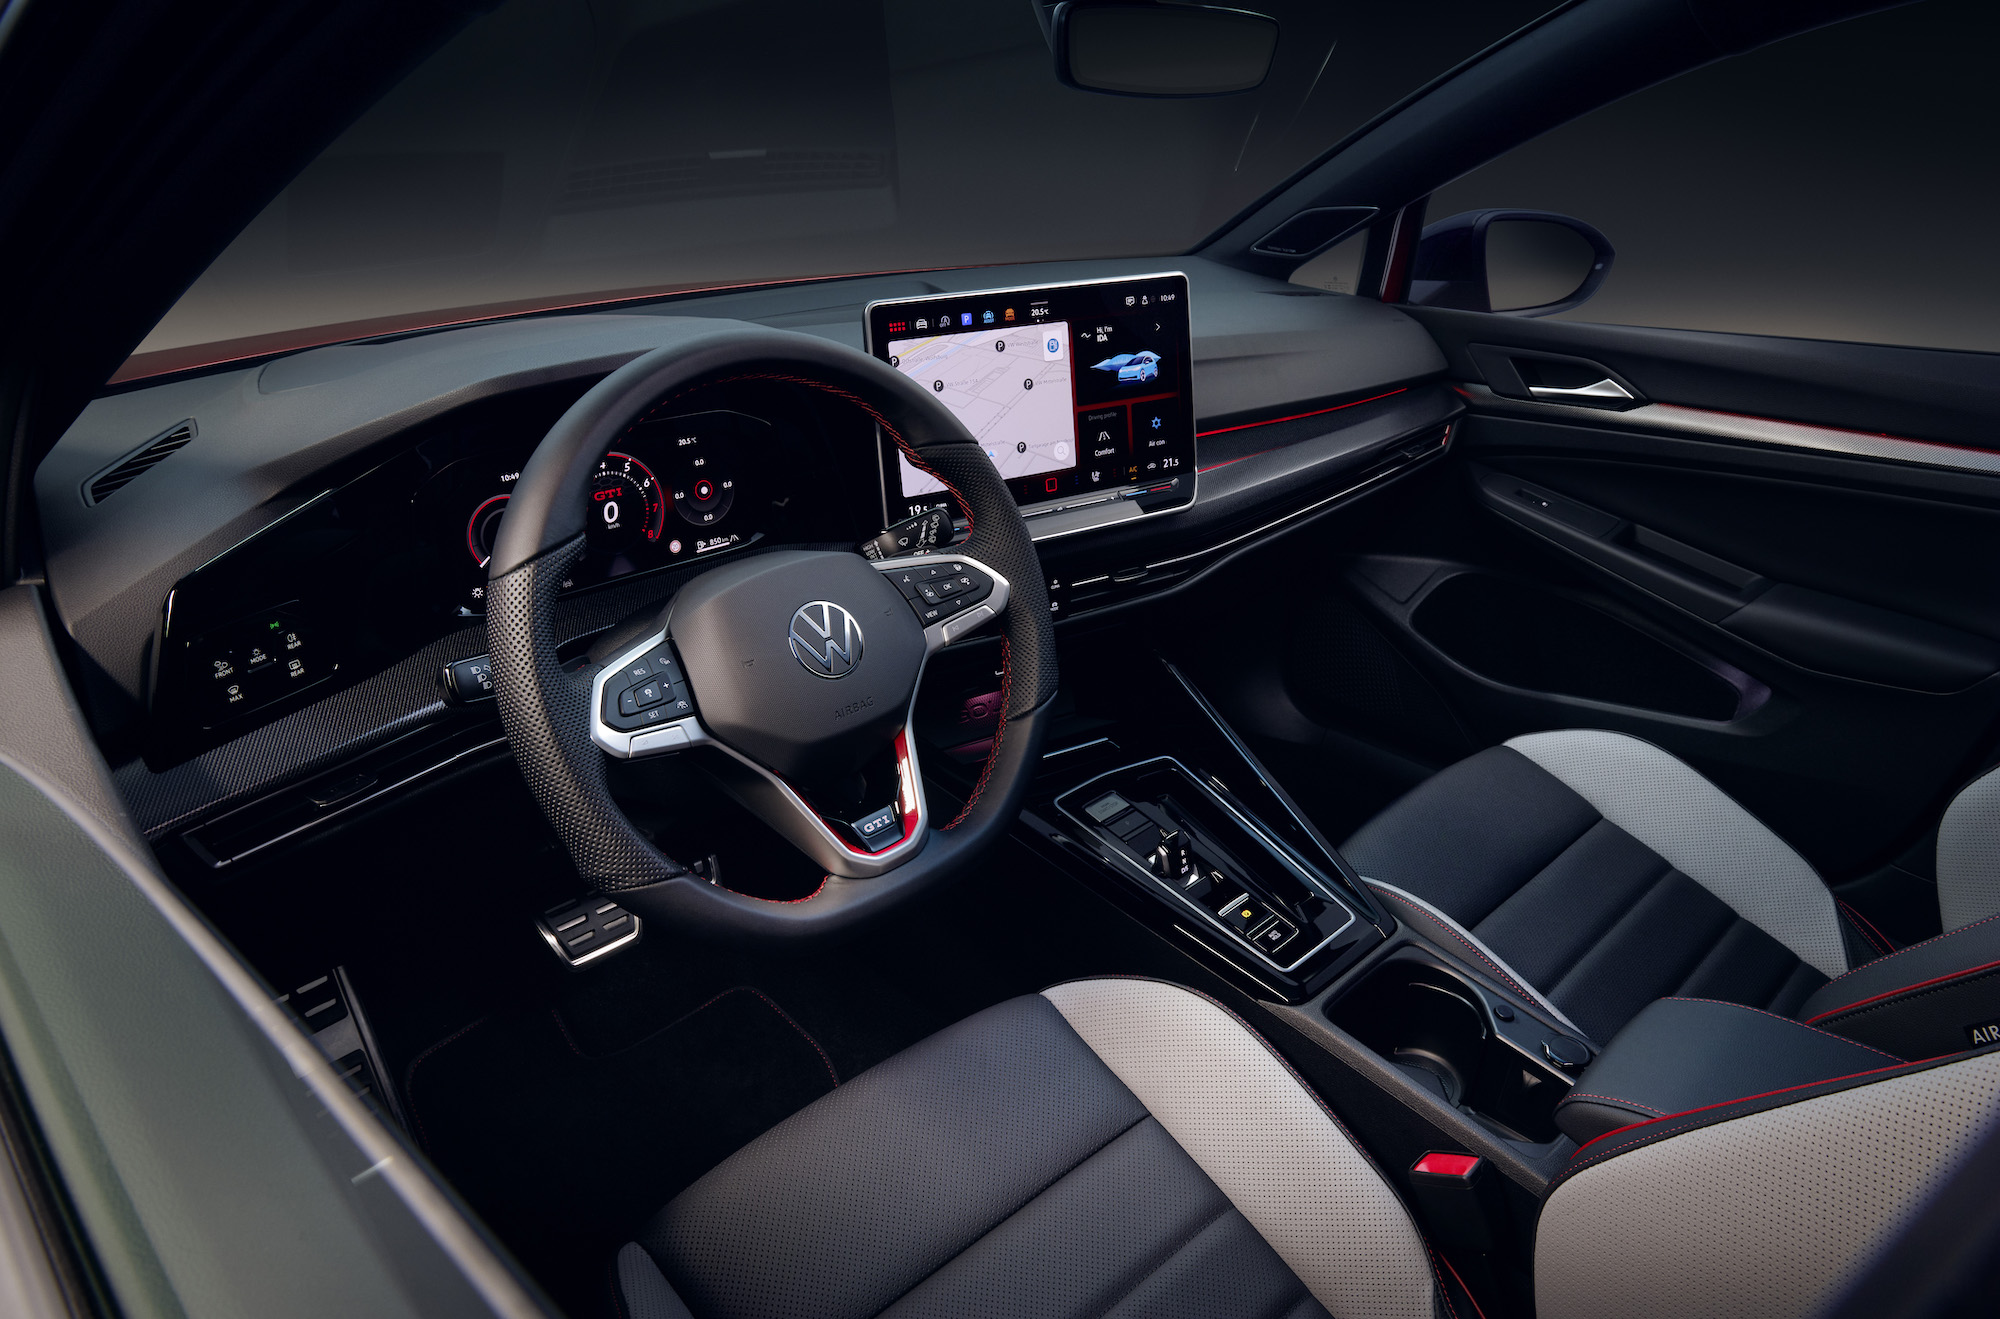 Une image montrant l'intérieur d'une nouvelle Volkswagen Gold, y compris le volant et l'écran tactile.